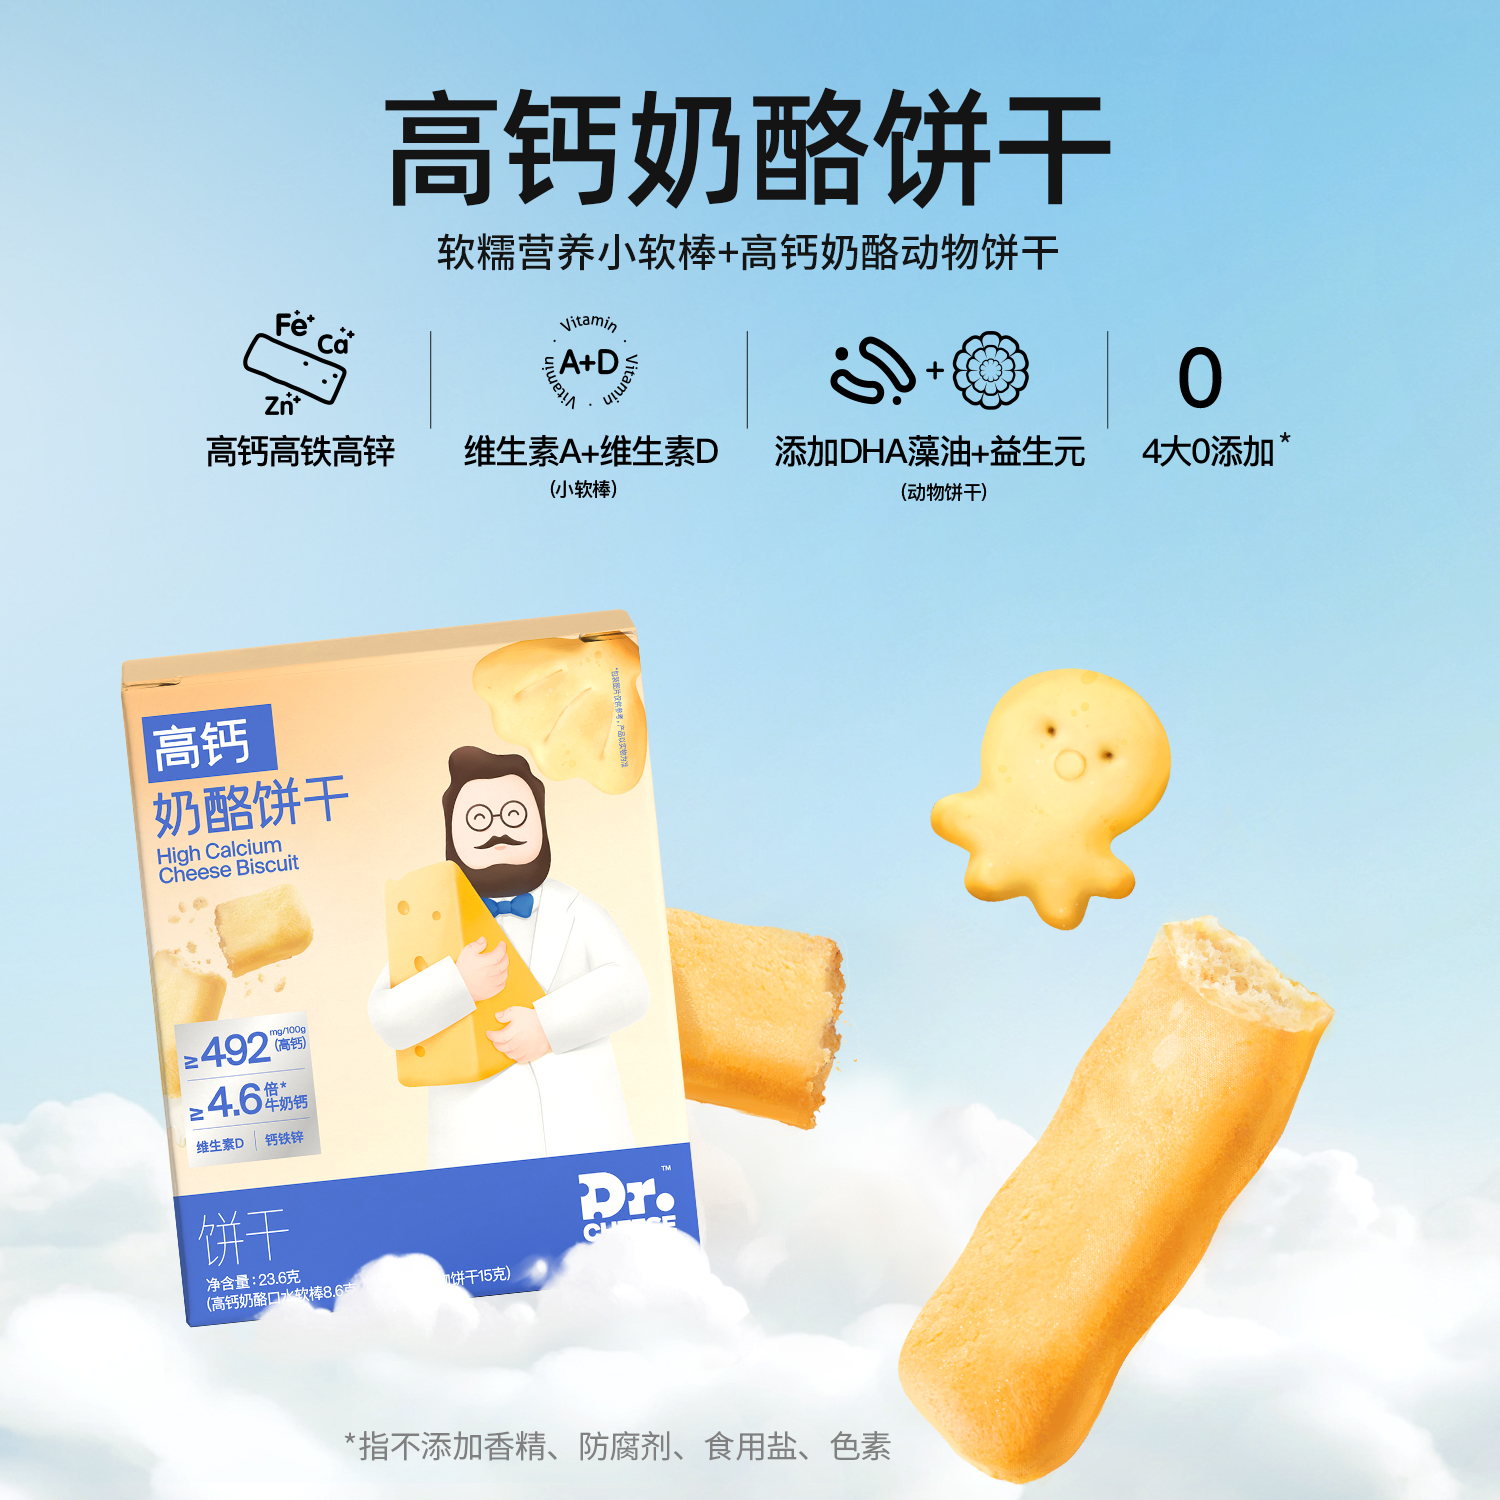 【推荐】奶酪博士高钙奶酪动物饼干宝宝营养零食尝鲜2盒装